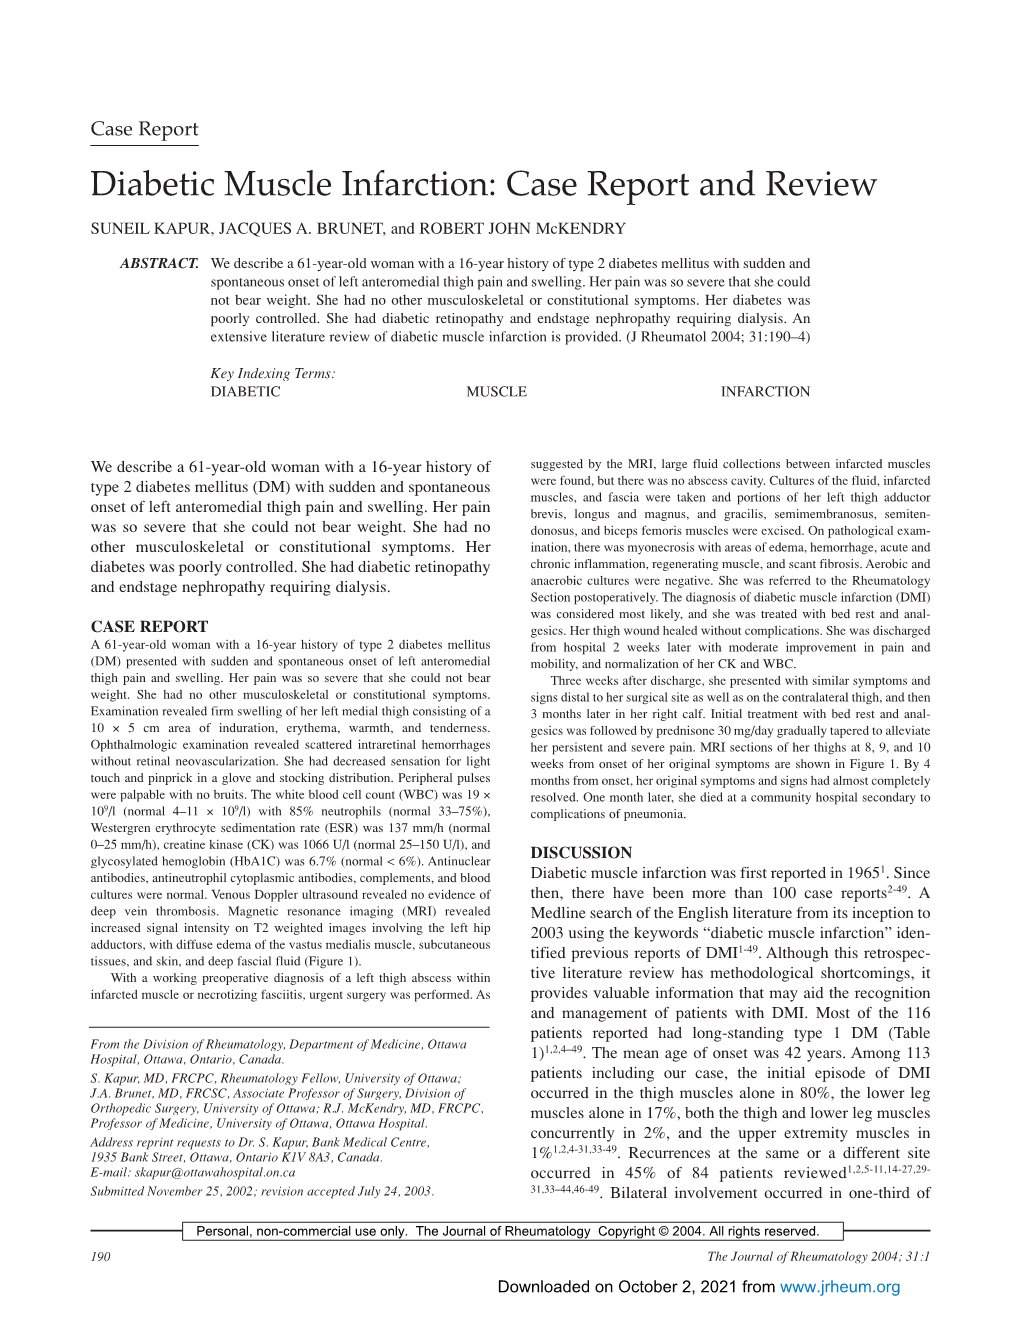 Diabetic Muscle Infarction: Case Report and Review SUNEIL KAPUR, JACQUES A